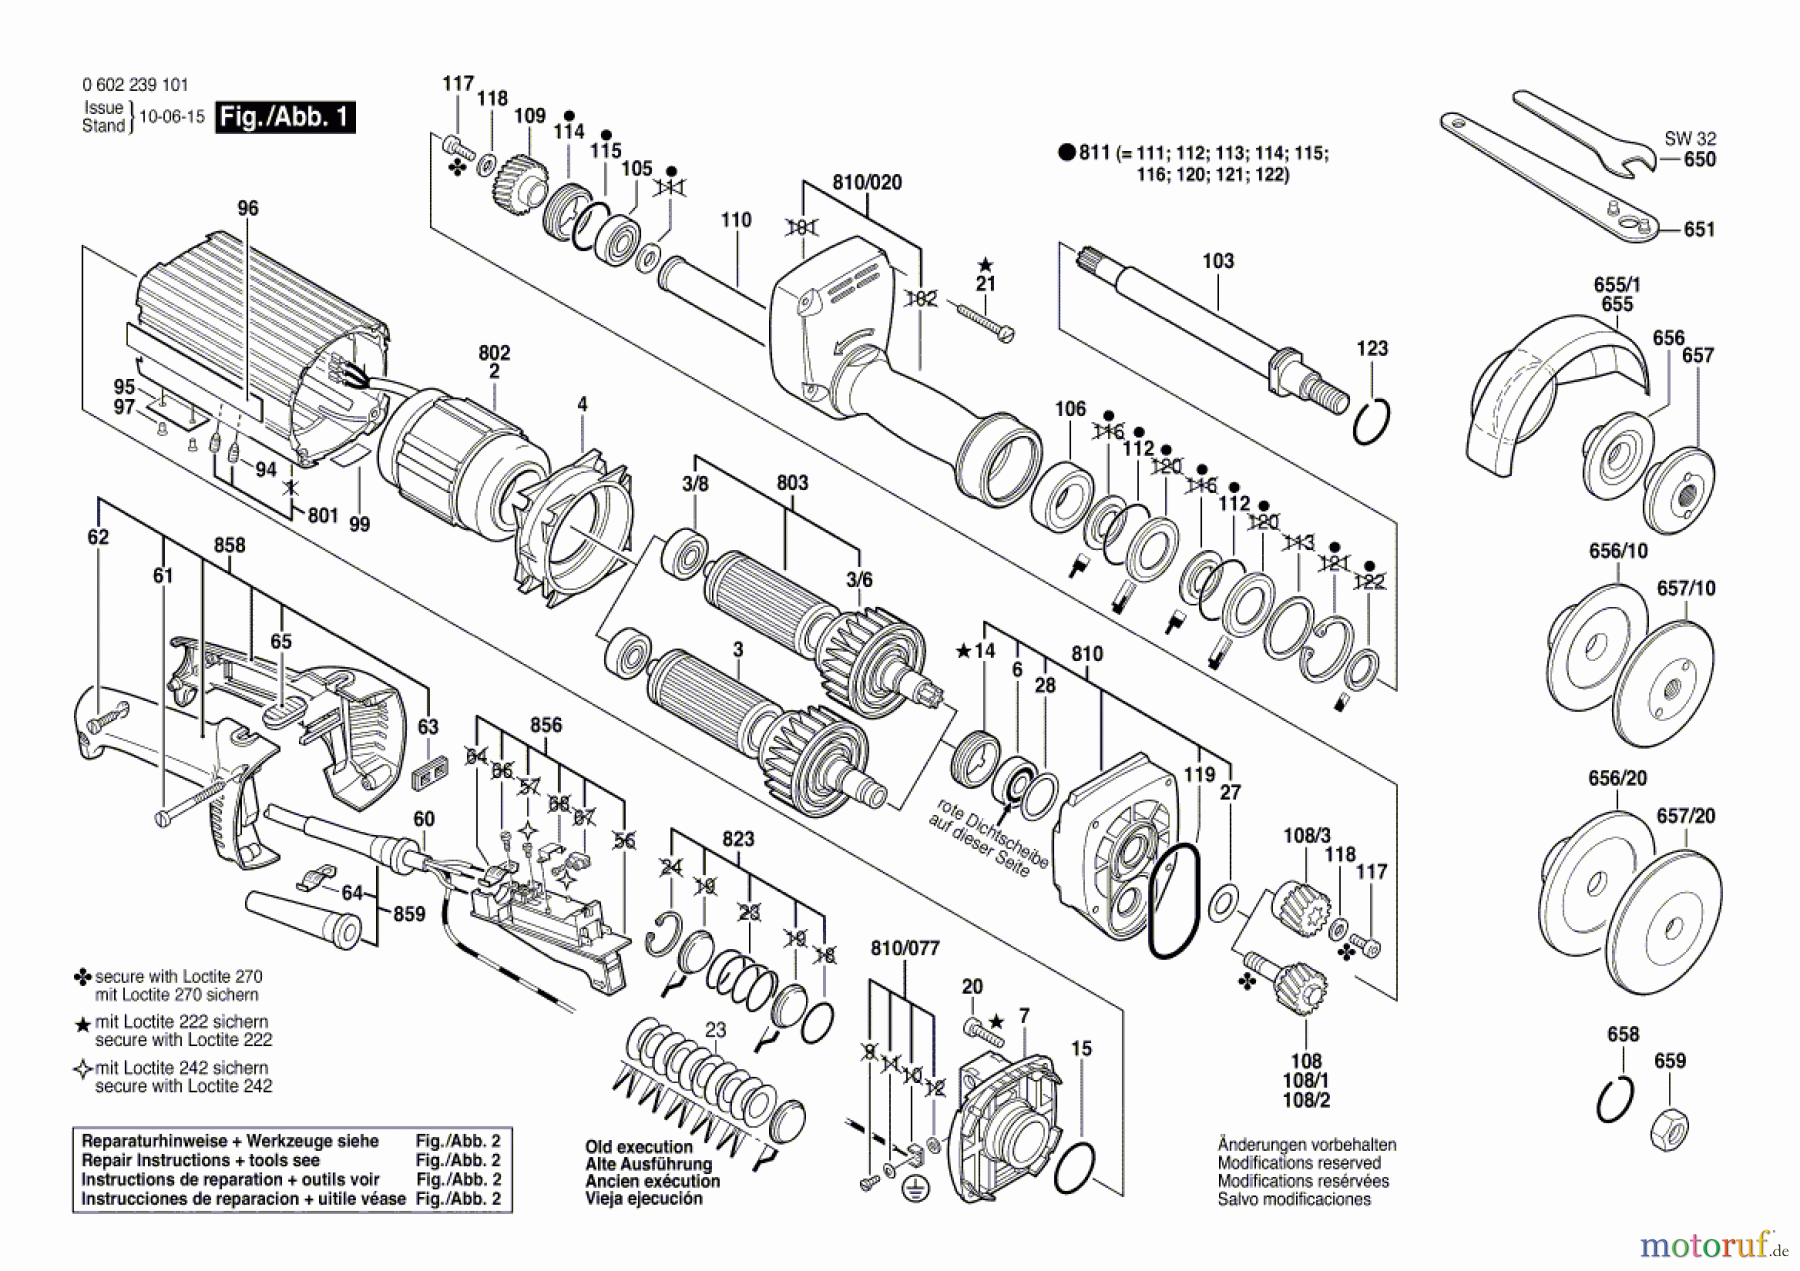  Bosch Werkzeug Hf-Geradschleifer GERADSCHLEIFER ---- Seite 1